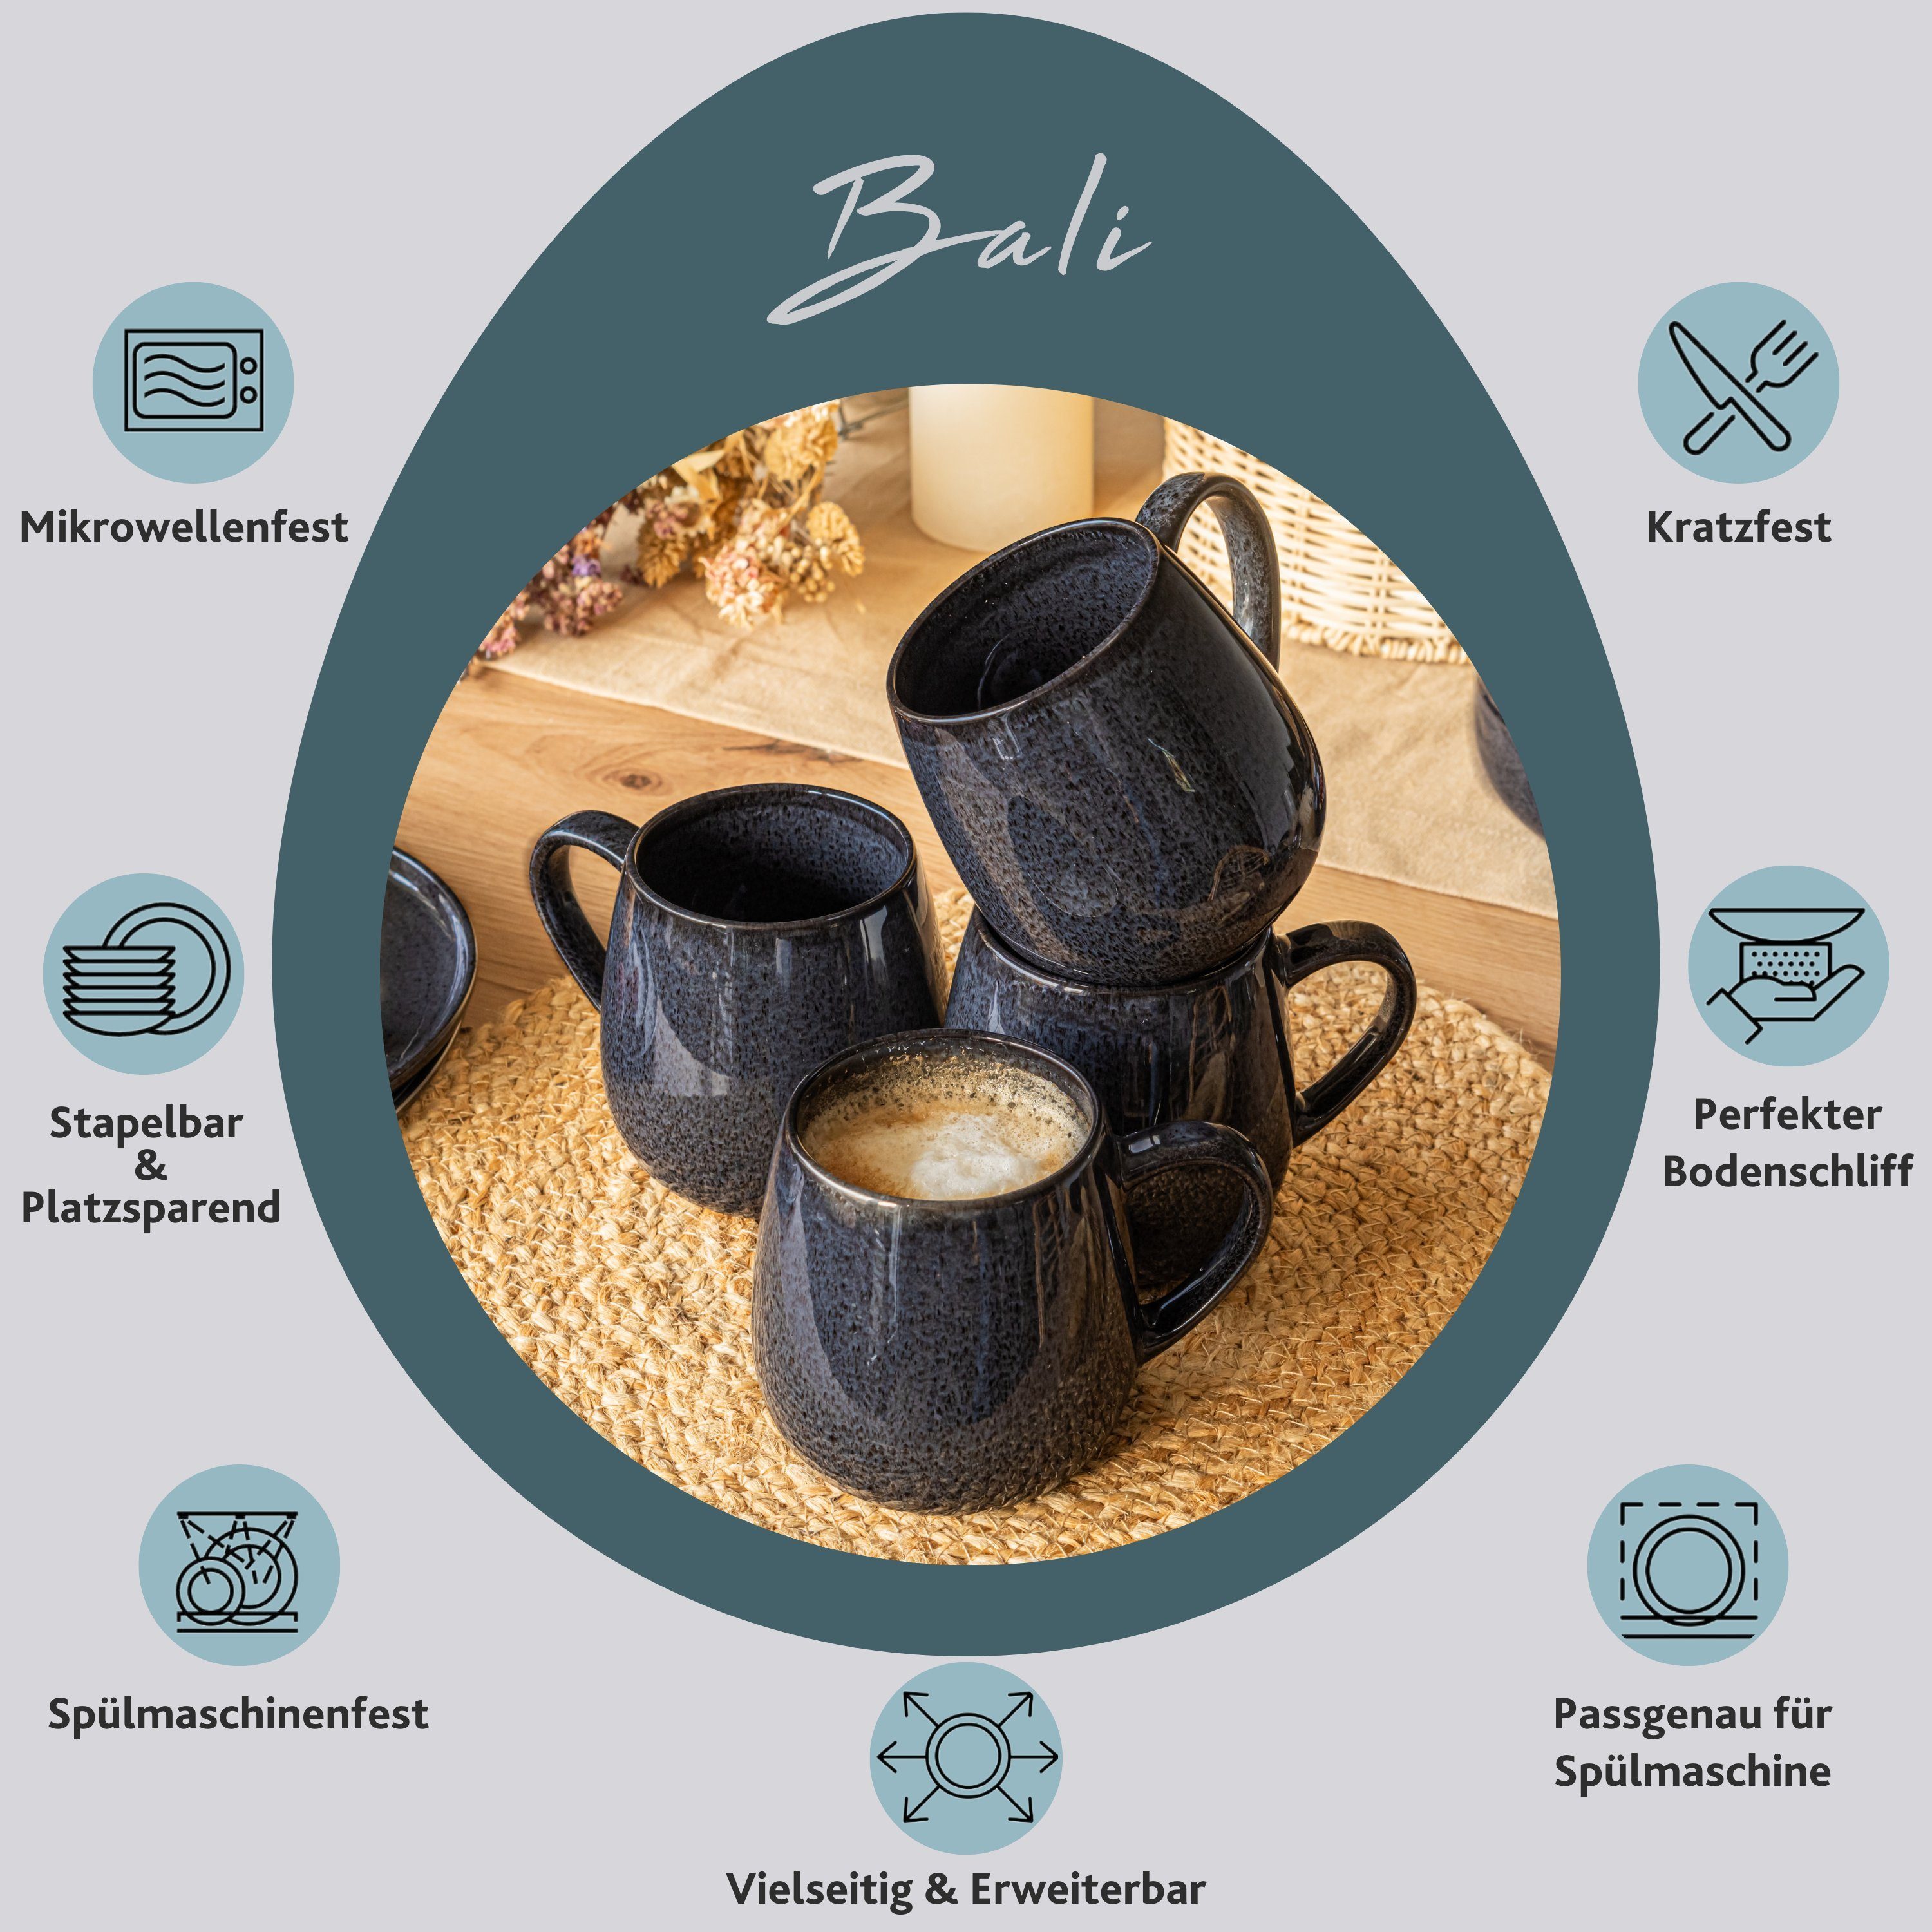 Kaffeeebecher (4-teilig), dunkler Handmade Steingut, Dunkelgrau SÄNGER Maserung, Becher mit Set Bali